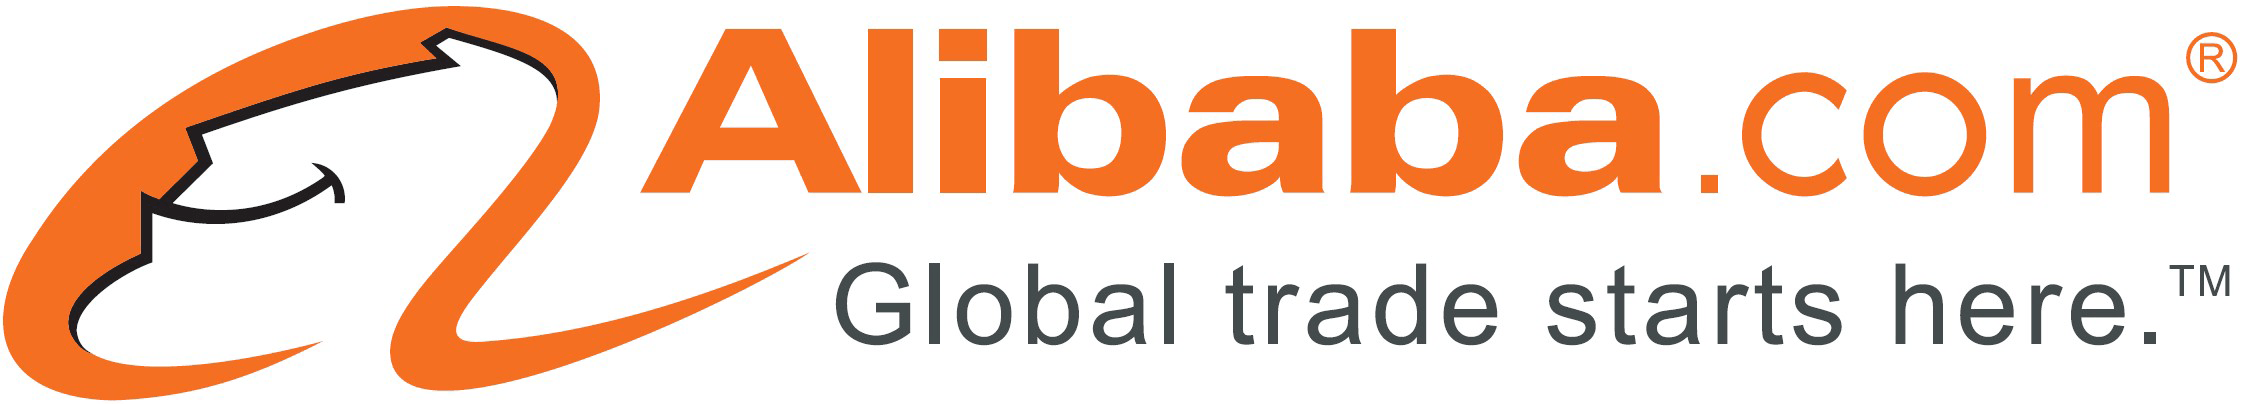 Alibaba Logo - Alibaba Group Logo PNG Transparent Alibaba Group Logo.PNG Images ...